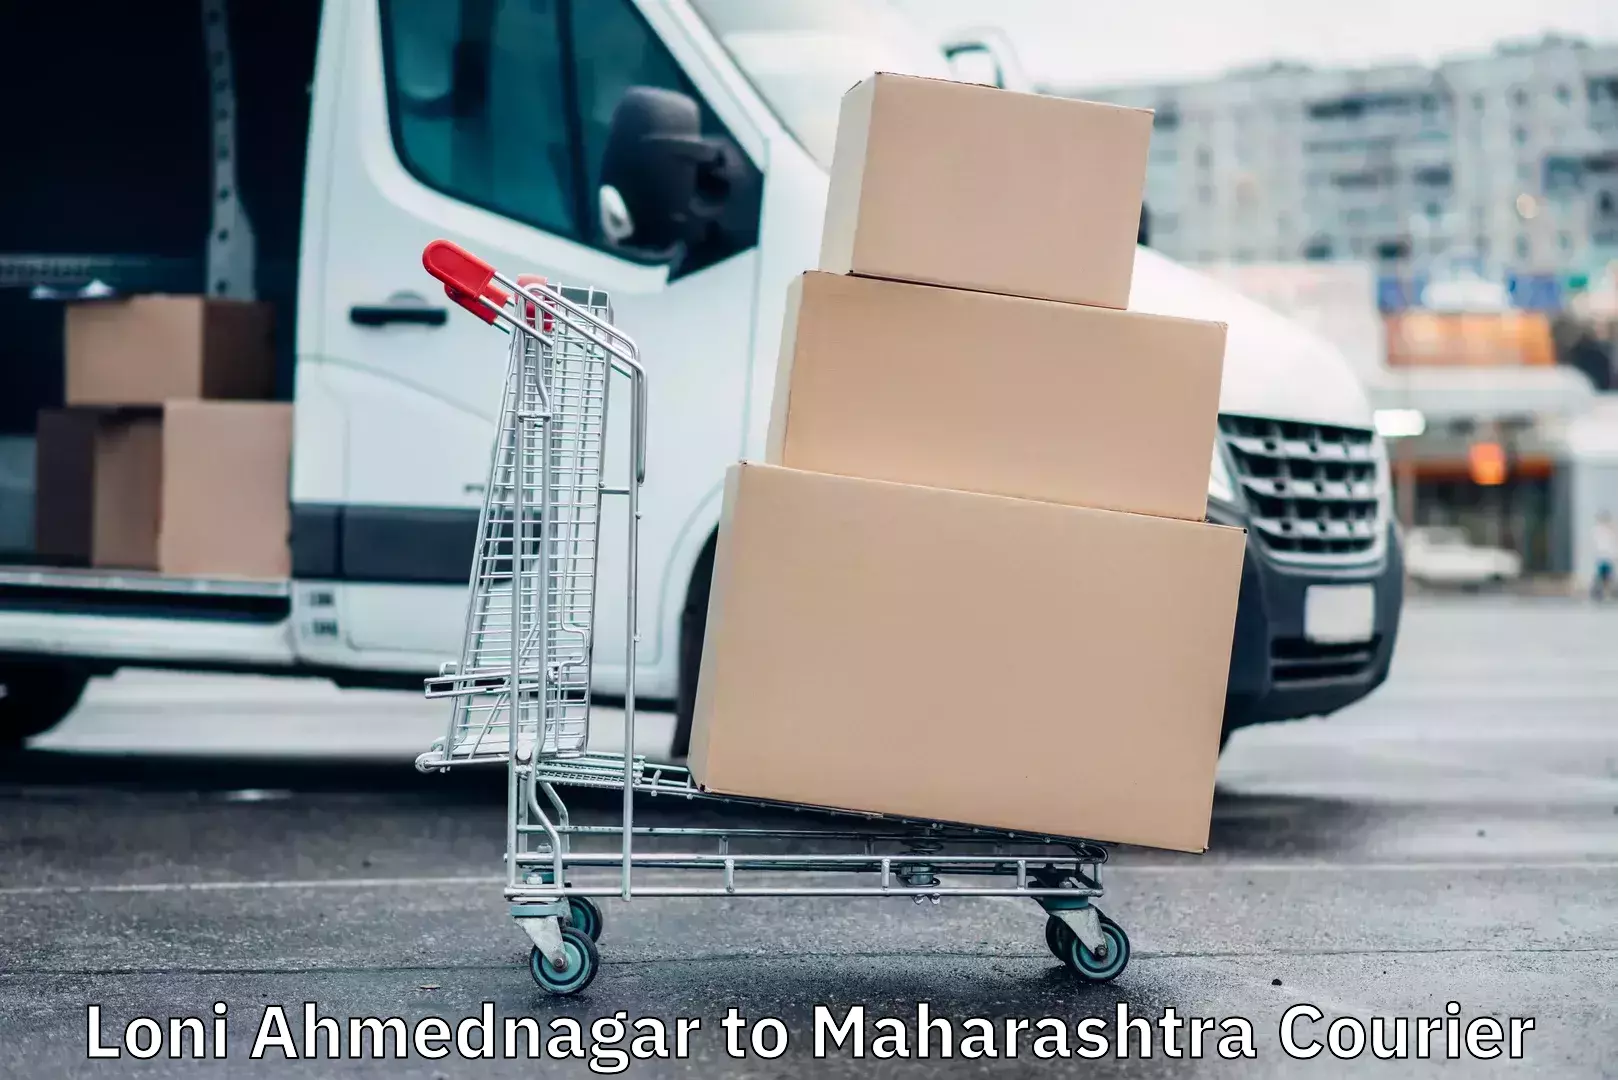 Express courier capabilities Loni Ahmednagar to Maharashtra